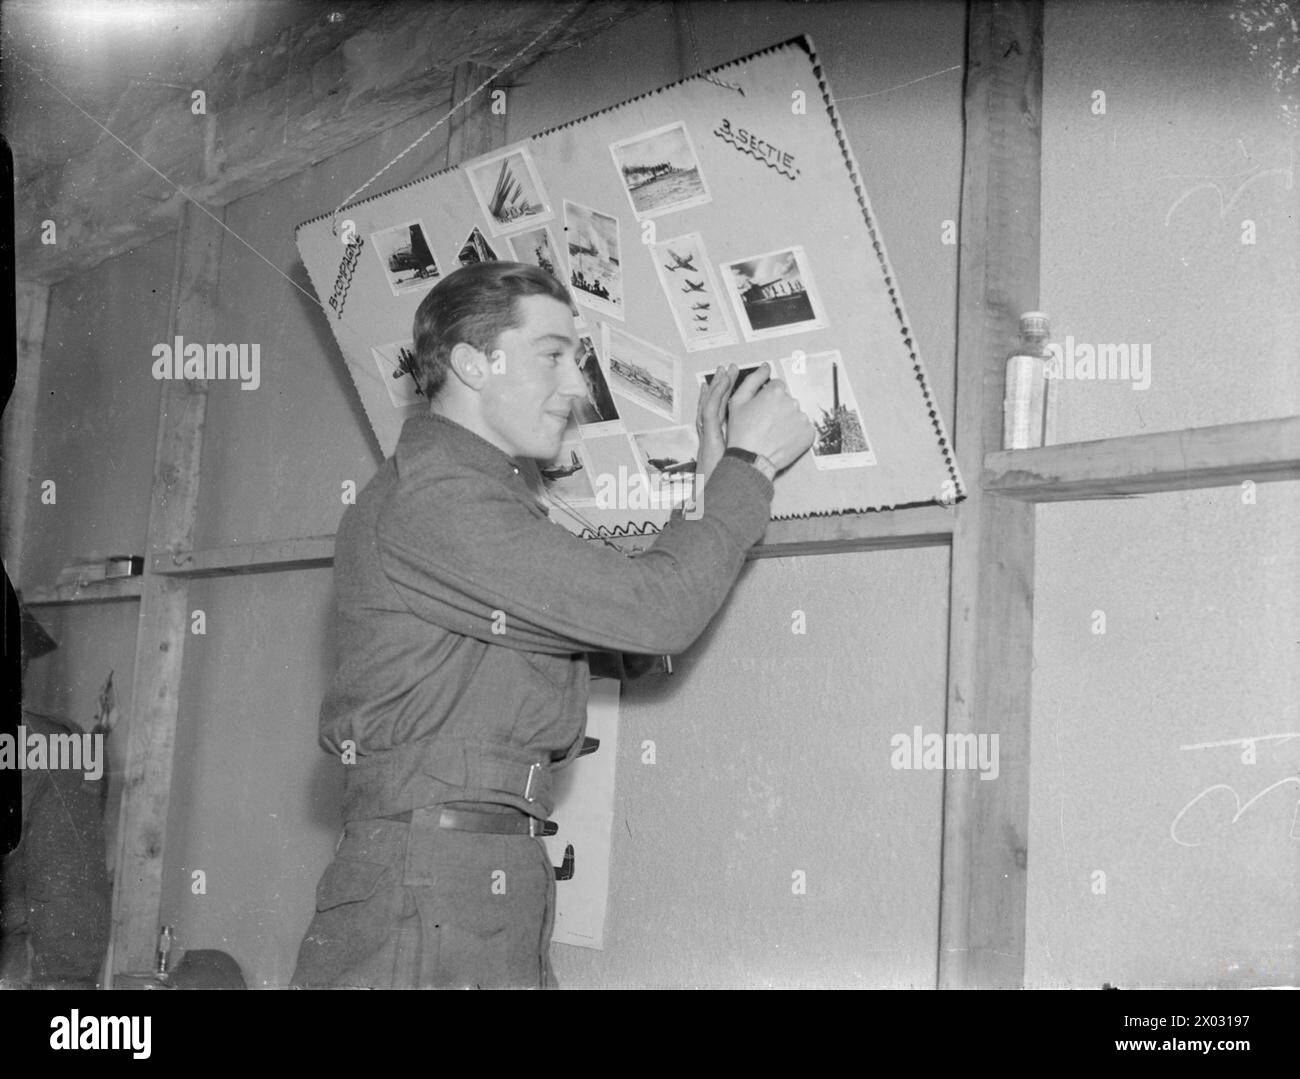 NIEDERLÄNDISCHE TRUPPEN TRAINIEREN IN ENGLAND, 1941 - Ein Soldat pinnt ein weiteres Foto in die Bildergalerie verschiedener Waffen auf einer Pinnwand in der Kaserne von „B Companie 3 Sectie“, irgendwo in England im Jahr 1941 Stockfoto